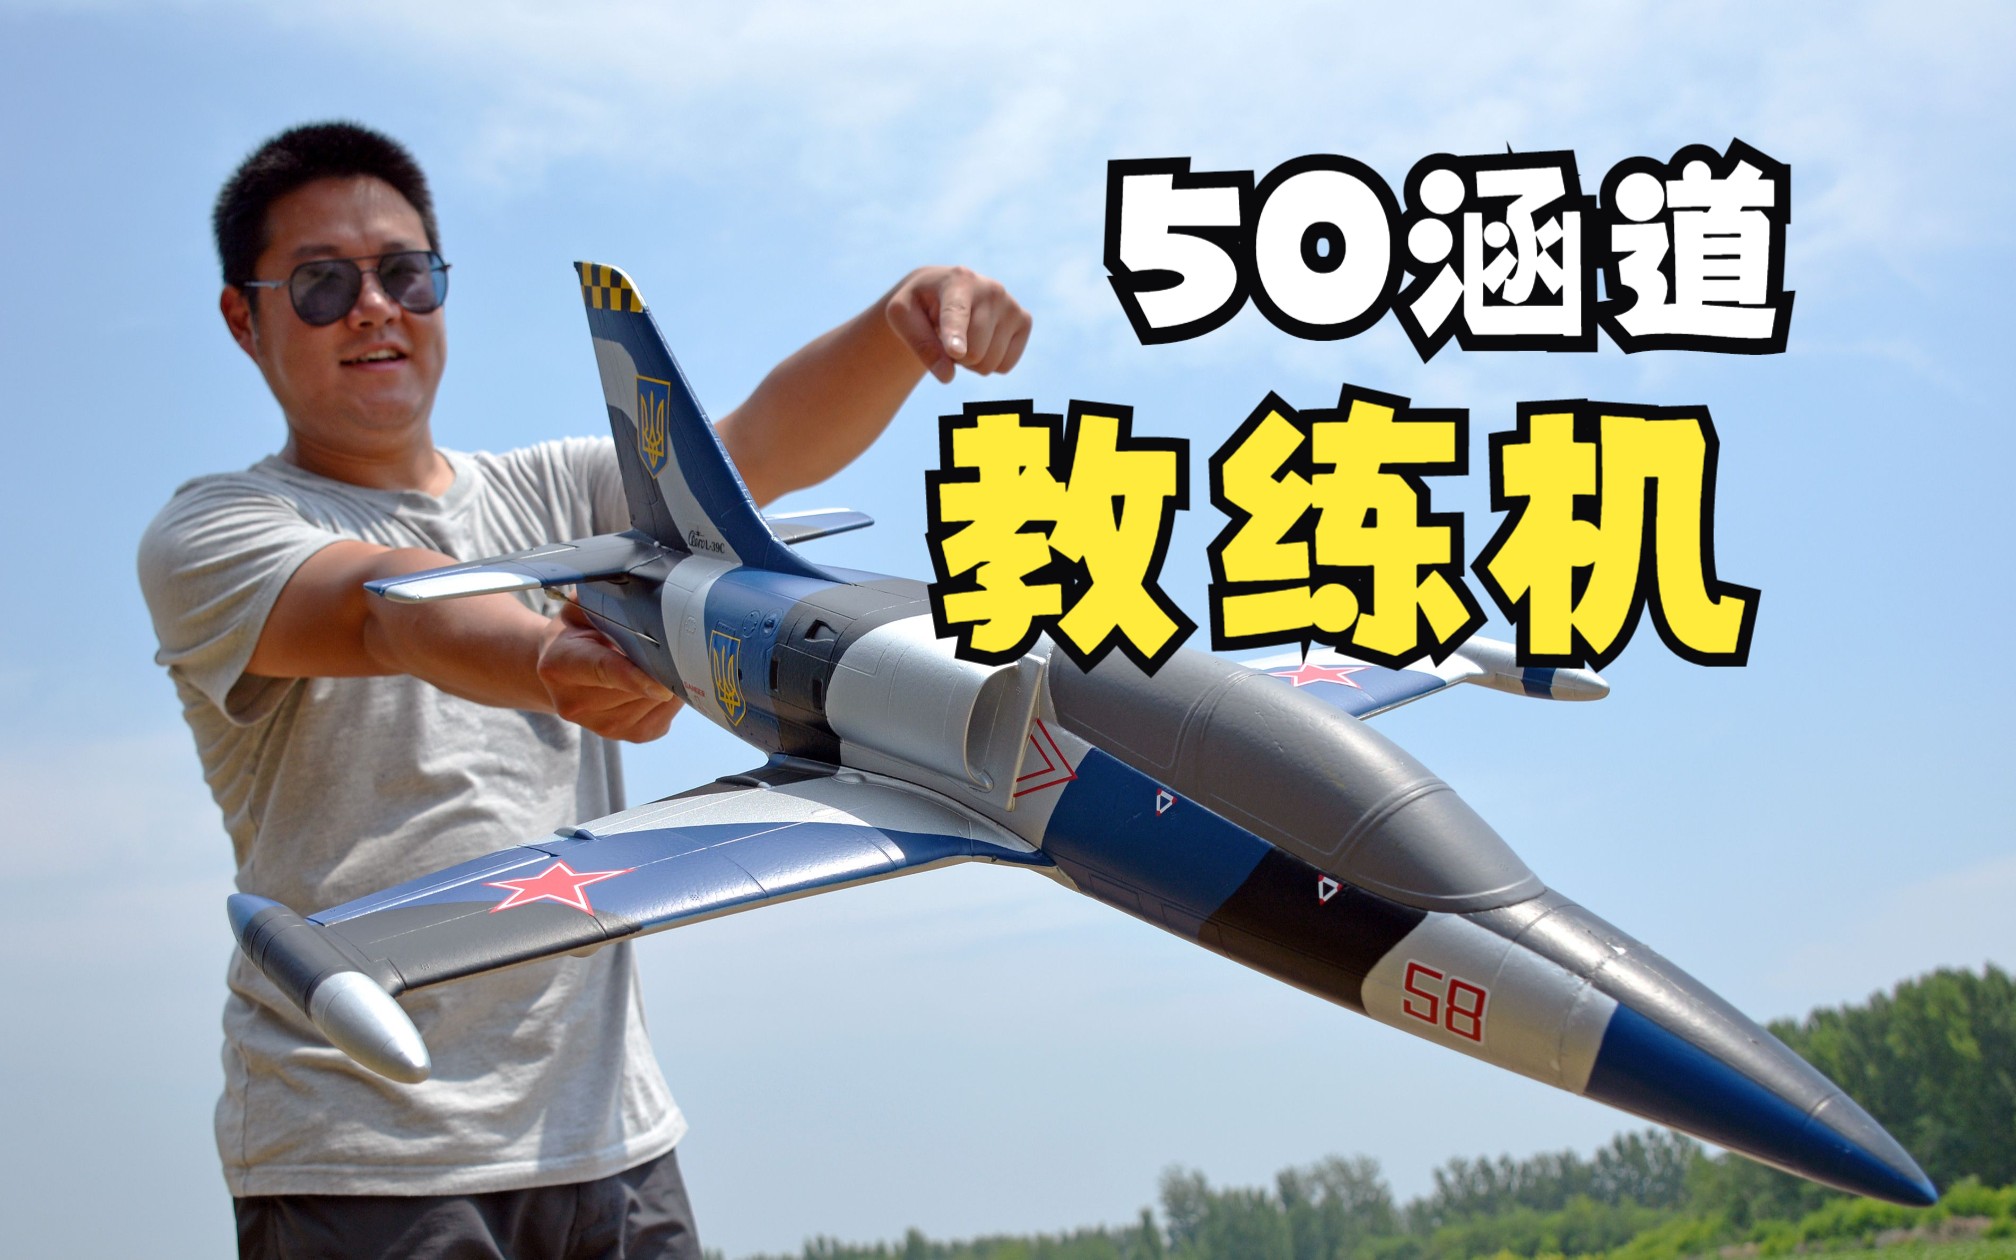 【又小又丑又好飞】测评蓝箭航模50涵道L-39教练机